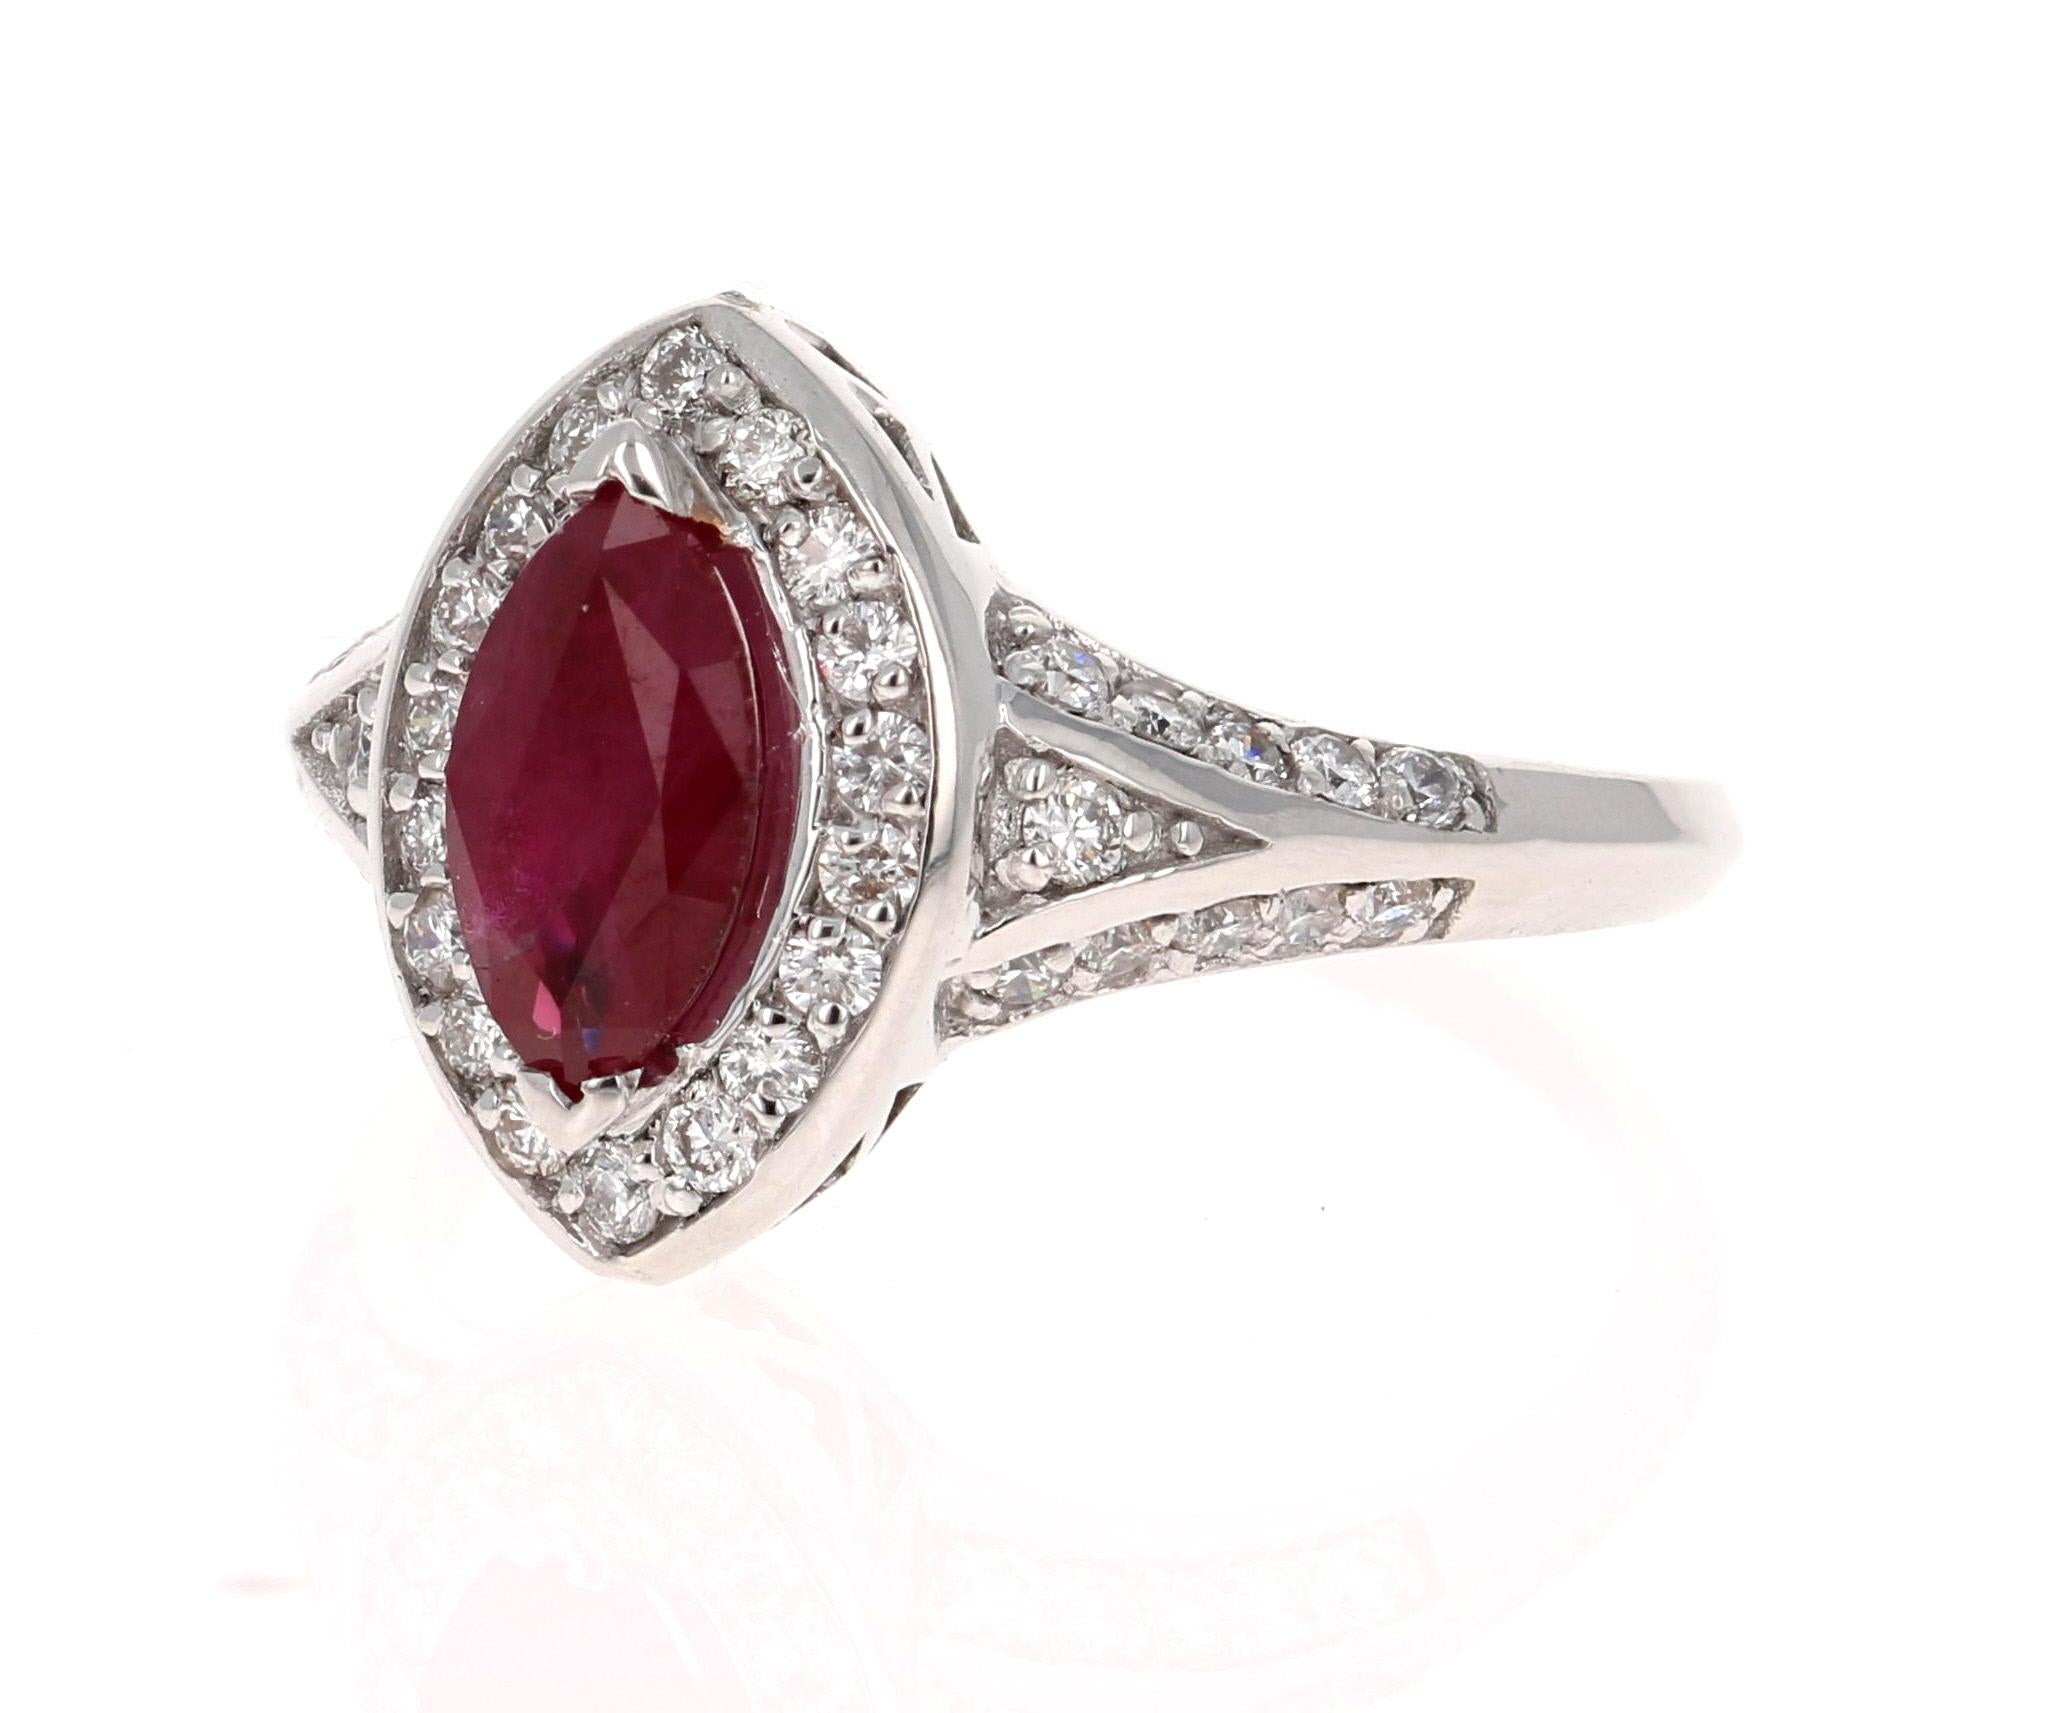 Ein schlichter, aber schöner Ring mit einem 1,12 Karat schweren Rubin im Marquise-Schliff als Mittelpunkt und 40 Diamanten im Rundschliff mit einem Gewicht von 0,59 Karat. Das Gesamtkaratgewicht des Rings beträgt 1,71 Karat.

Der Ring ist aus 18